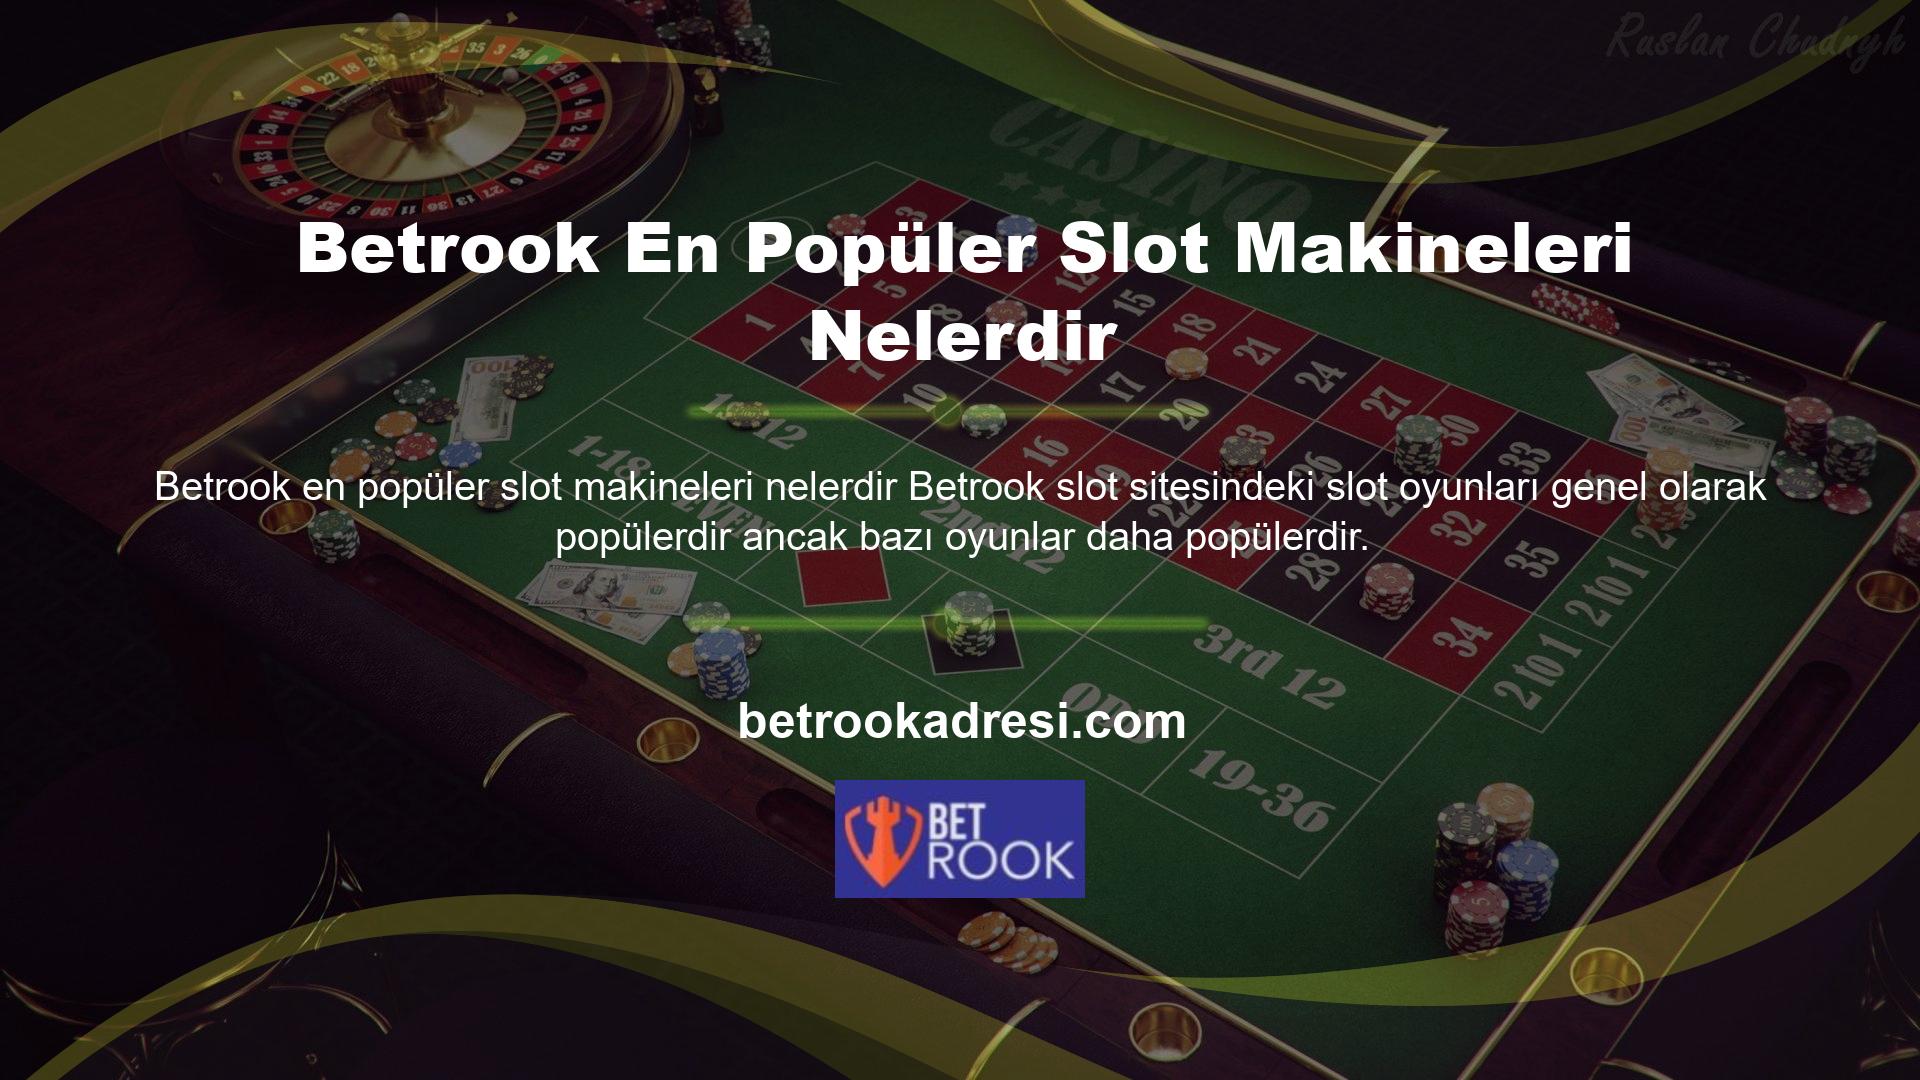 Betrook web sitesindeki popüler slot makineleri